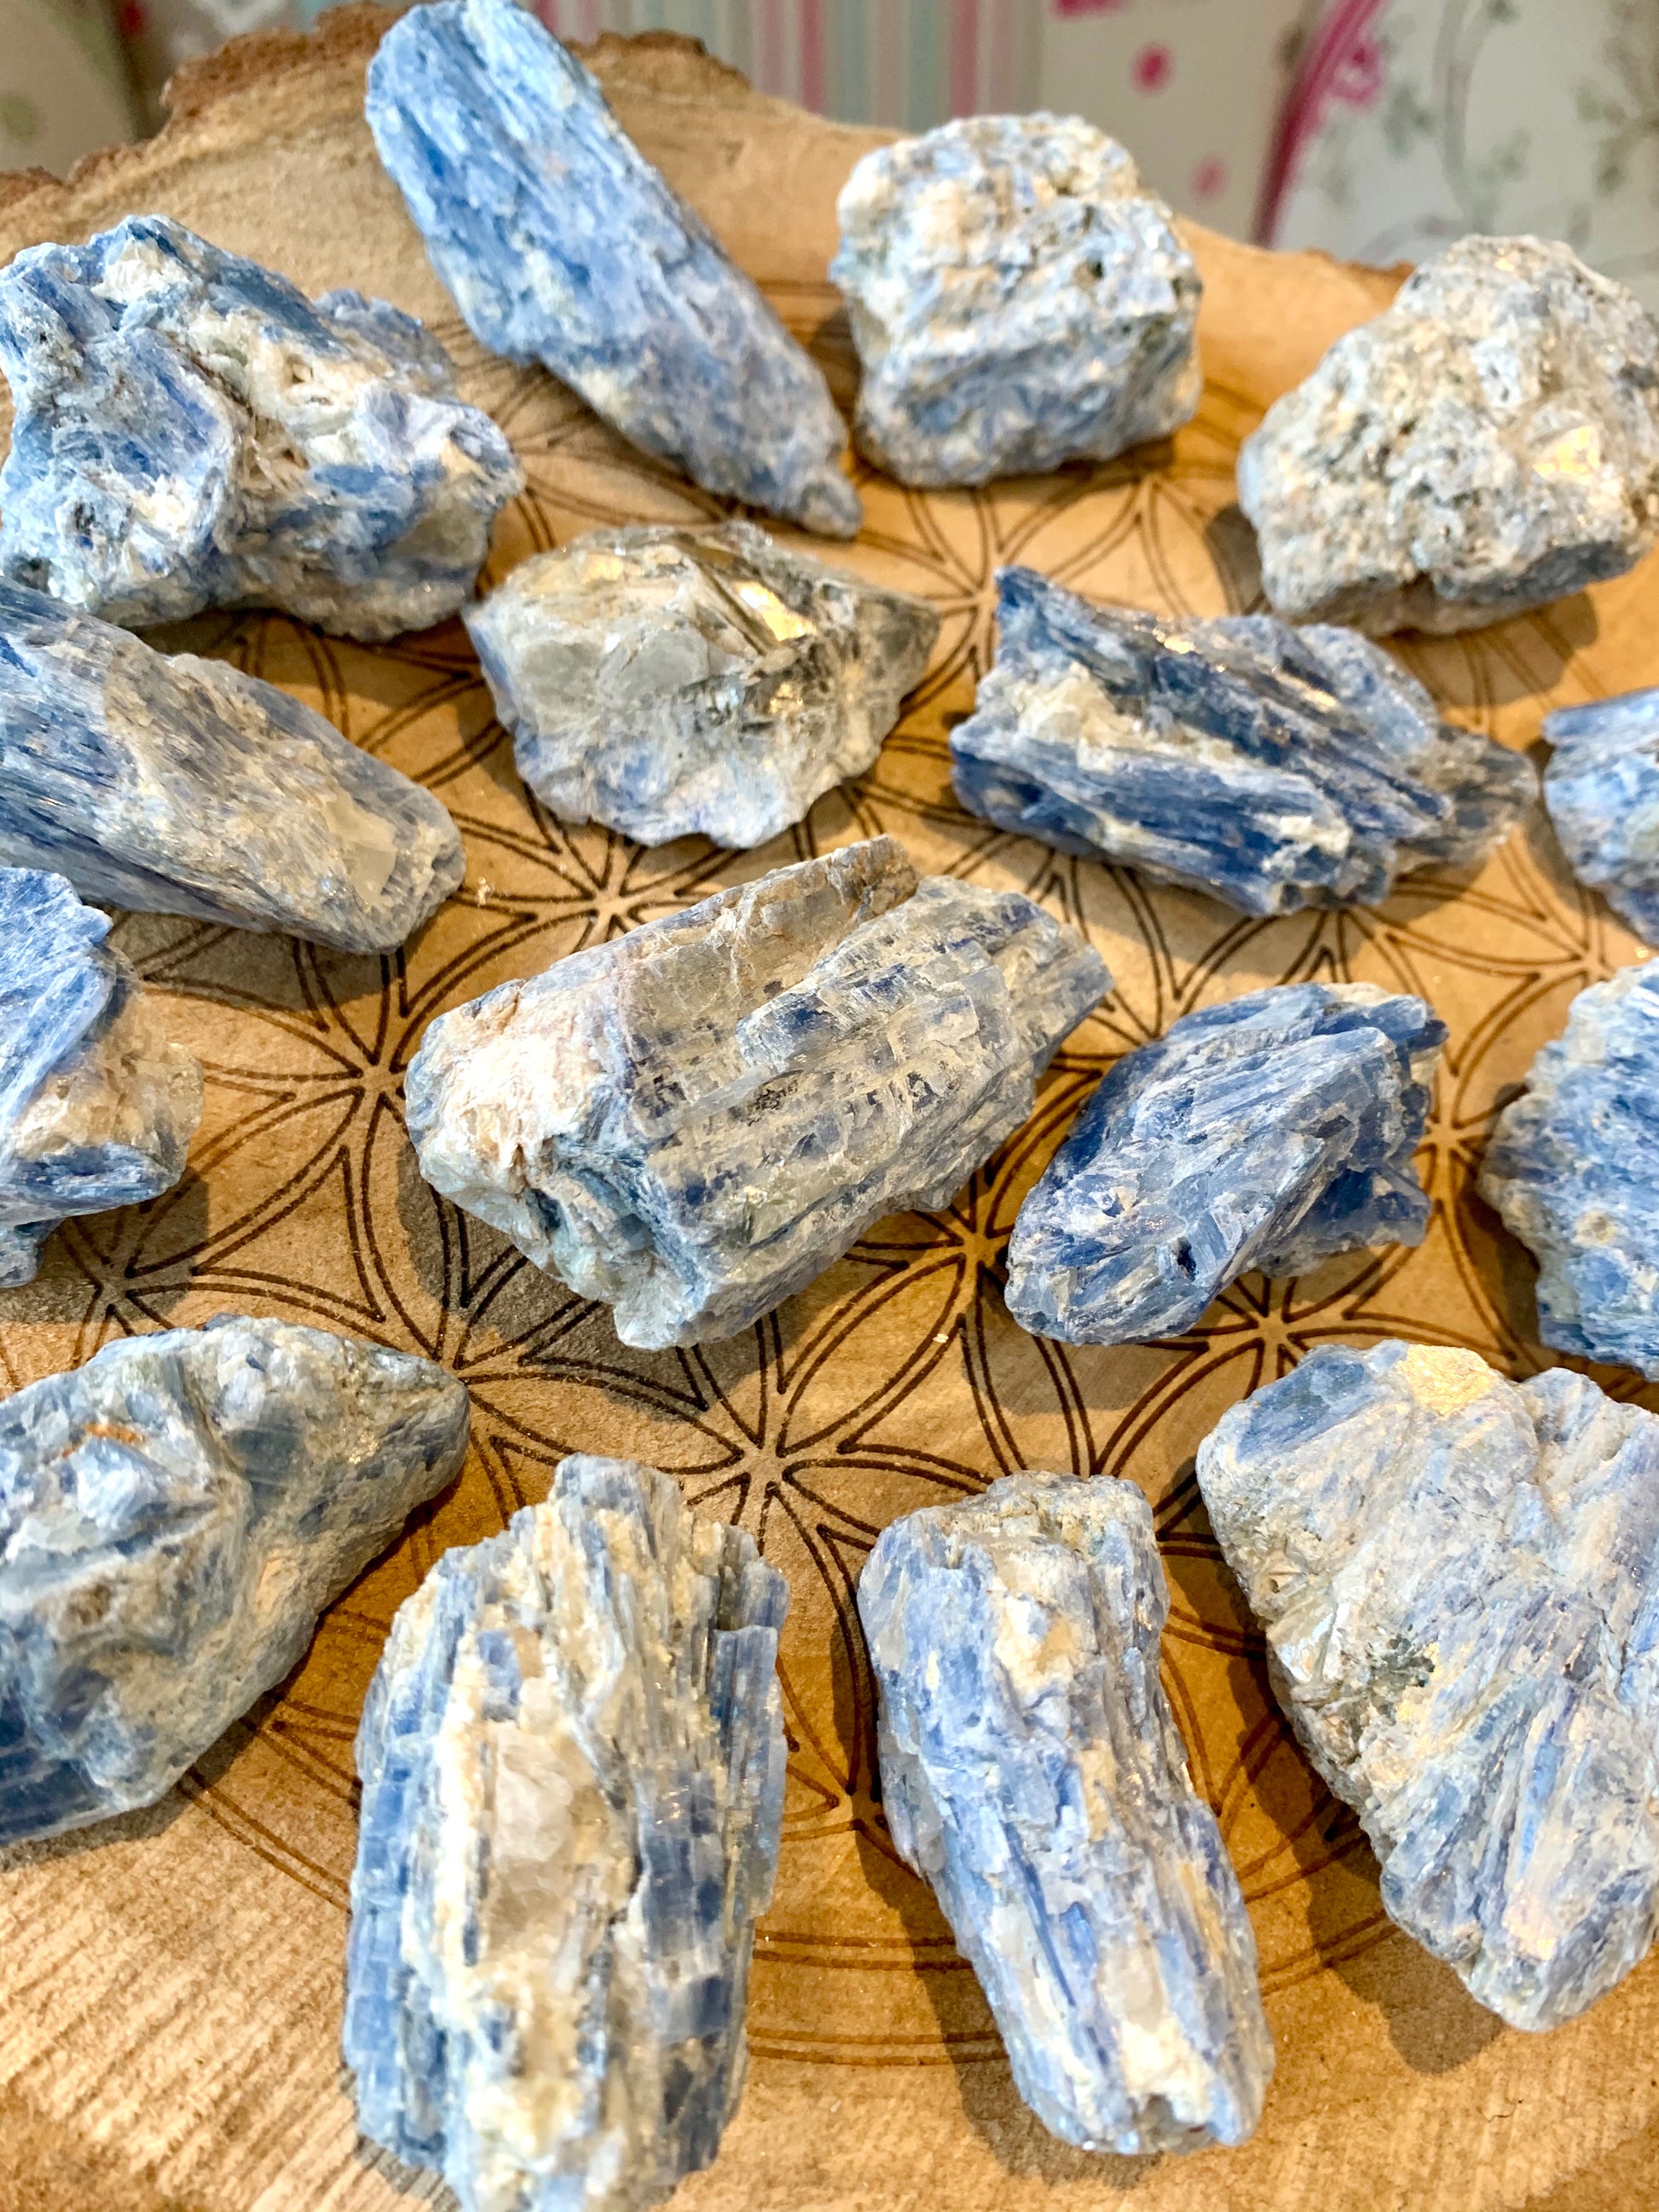 Blue Kyanite Rough Crystal 